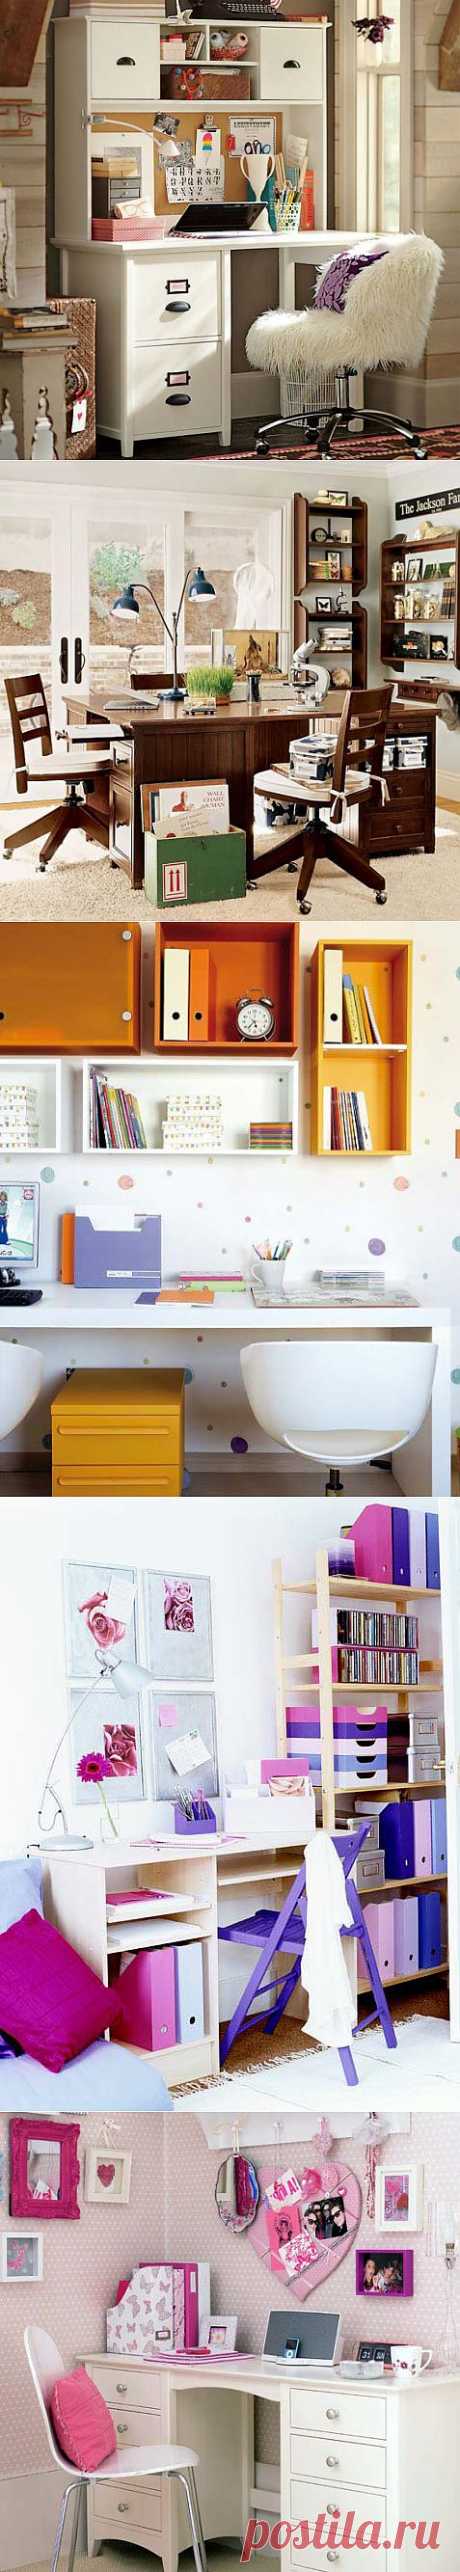 Организация рабочего пространства в детской комнате | Интерьер и Дизайн